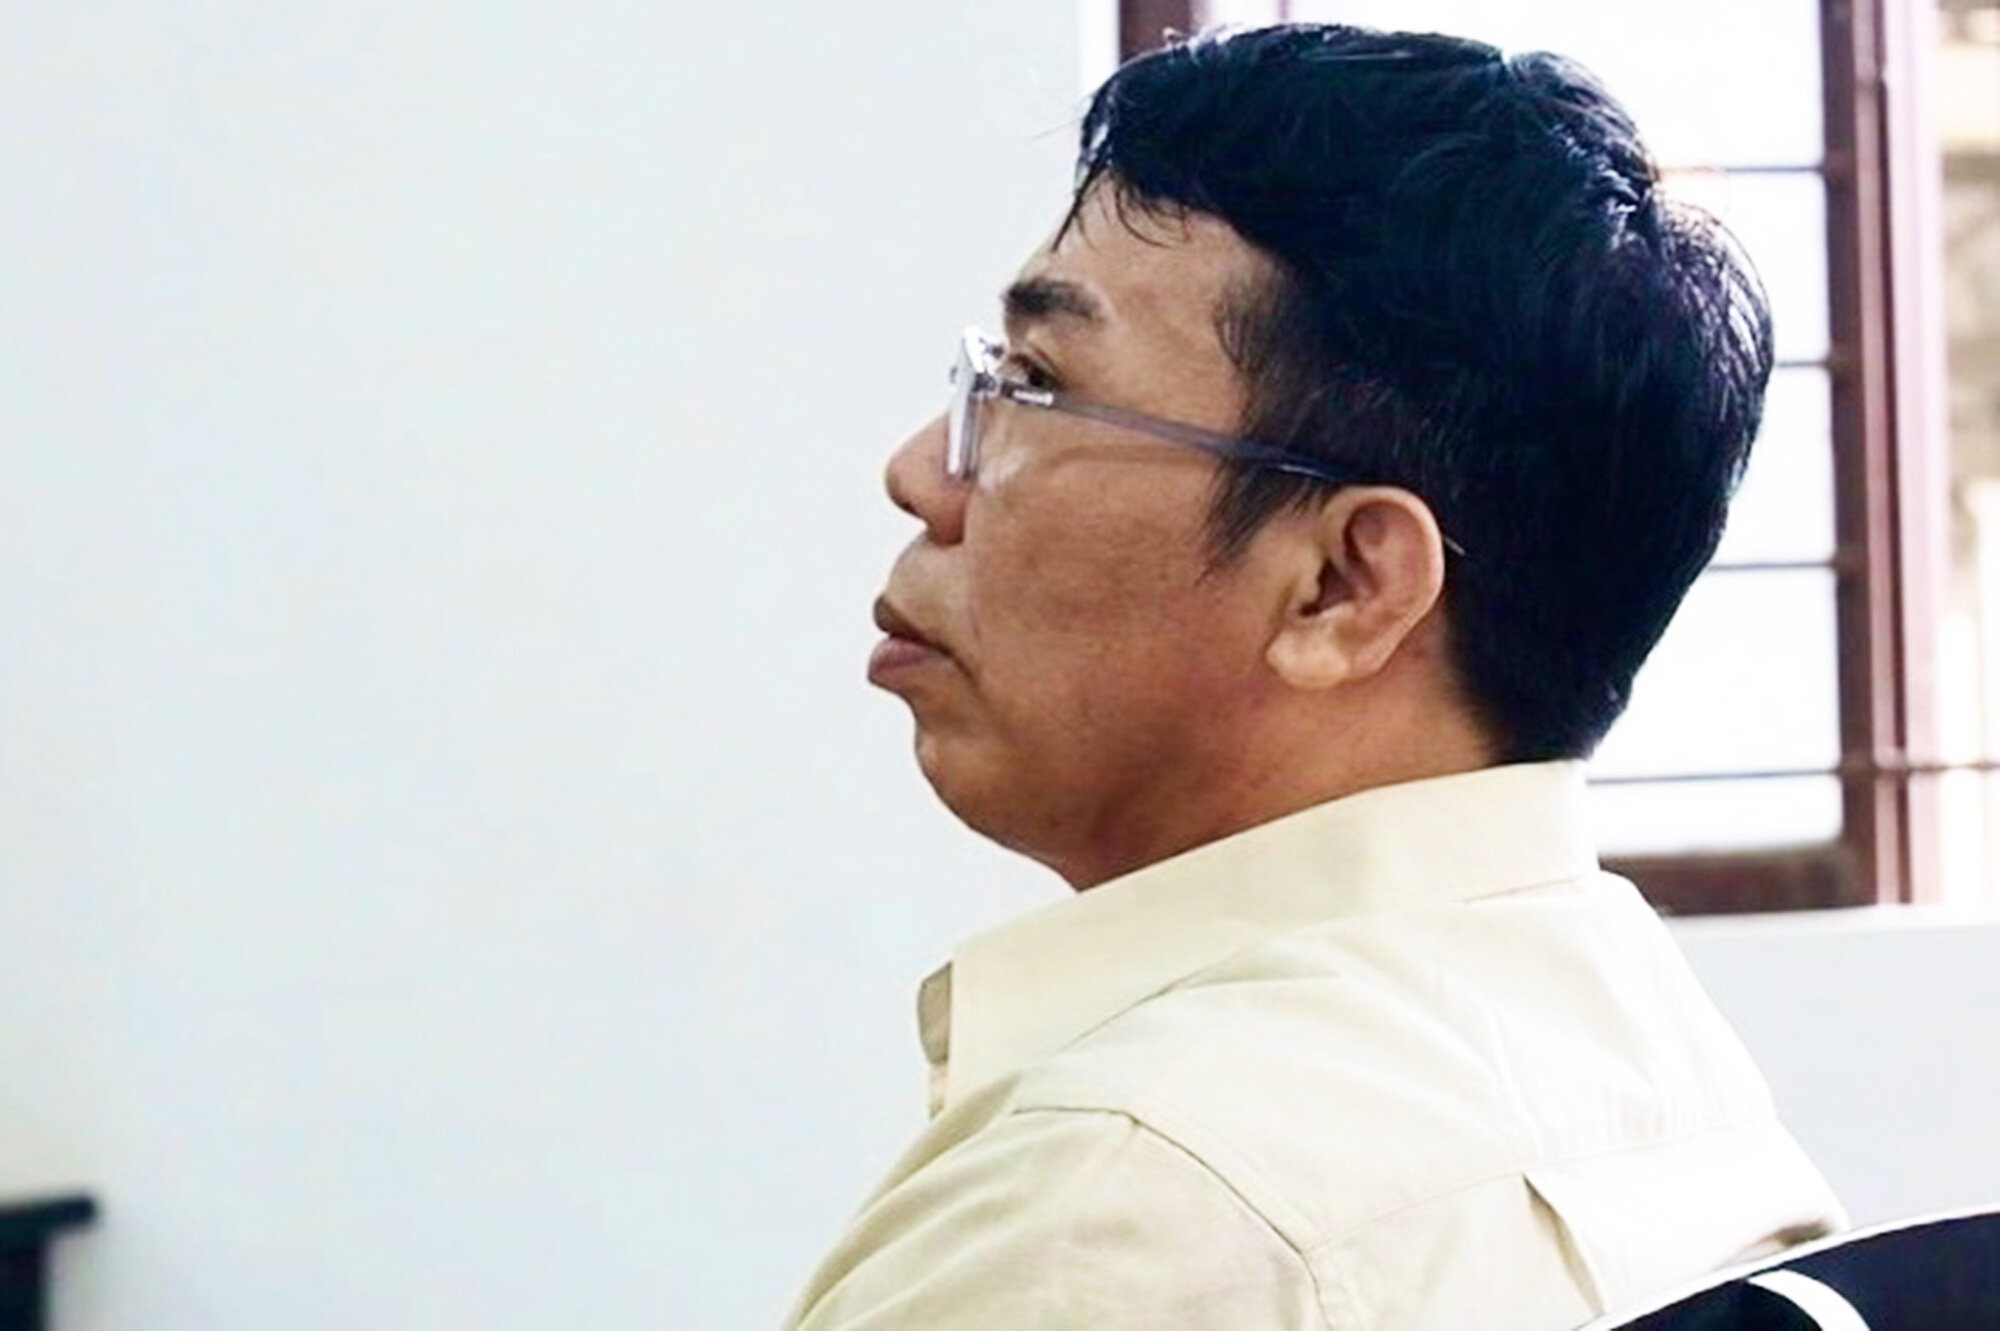 Bác sĩ thẩm mỹ 'chui' làm chết người lãnh 3 năm 6 tháng tù - 1